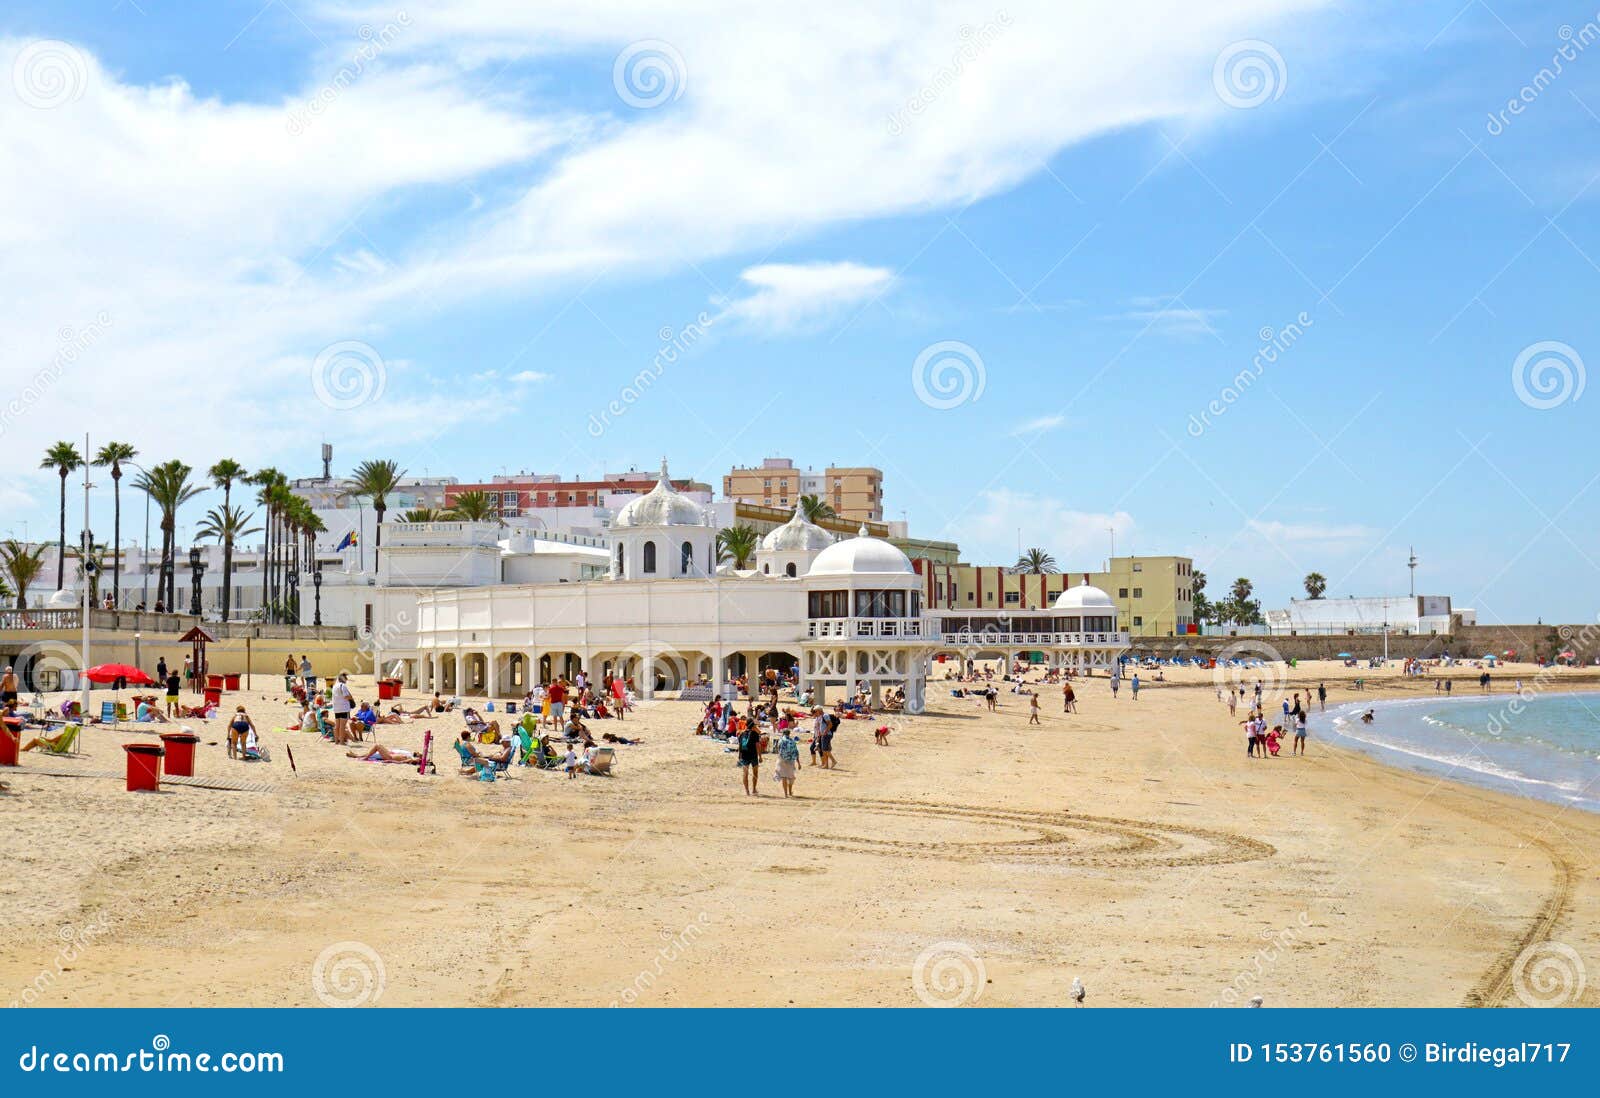 Playa La Caleta Beach At Cadiz Andalusia Spain Unrecognizable